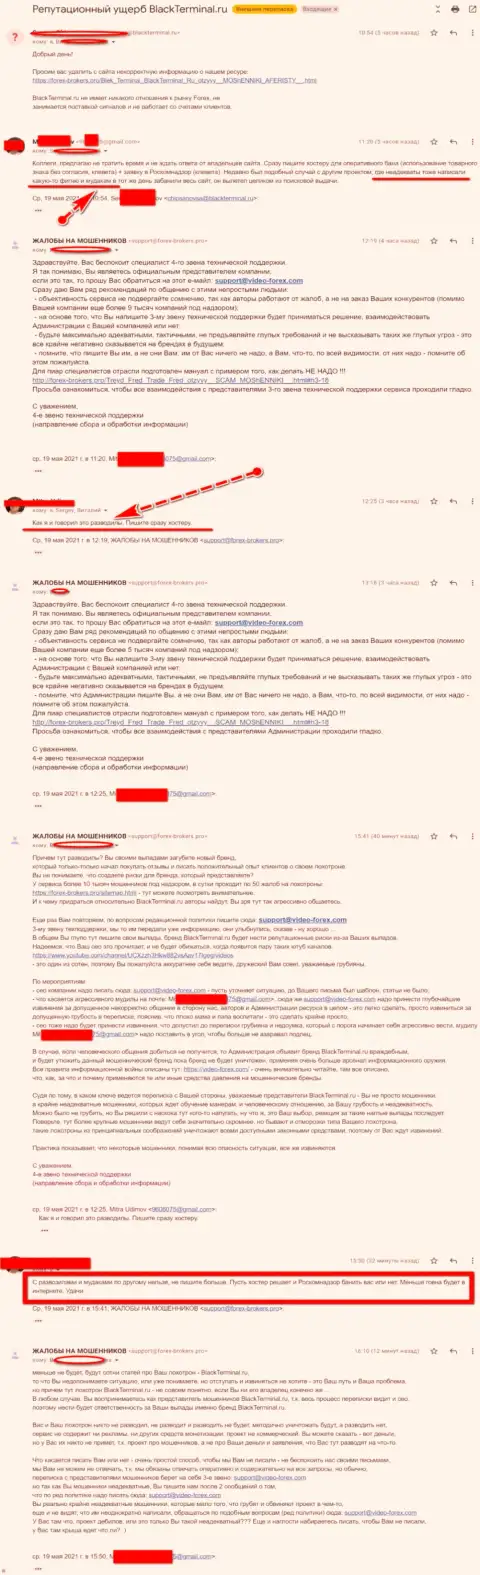 Онлайн переписка Администрации веб-портала, с отзывами из первых рук о BlackTerminal Ru, с представителями данного неправомерно действующего онлайн-сервиса